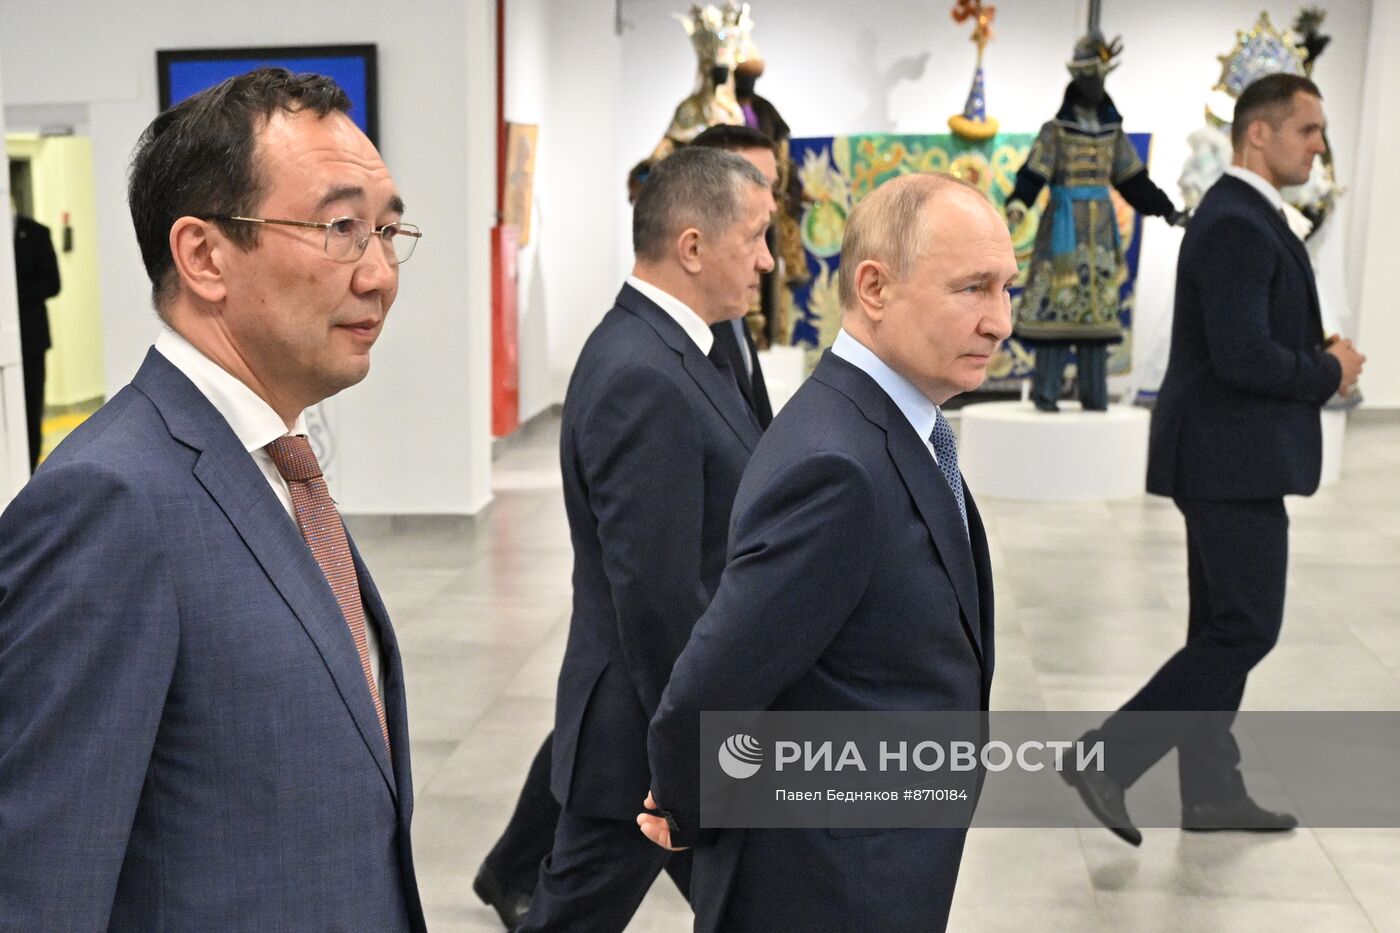 Рабочая поездка президента Владимира Путина в Якутск